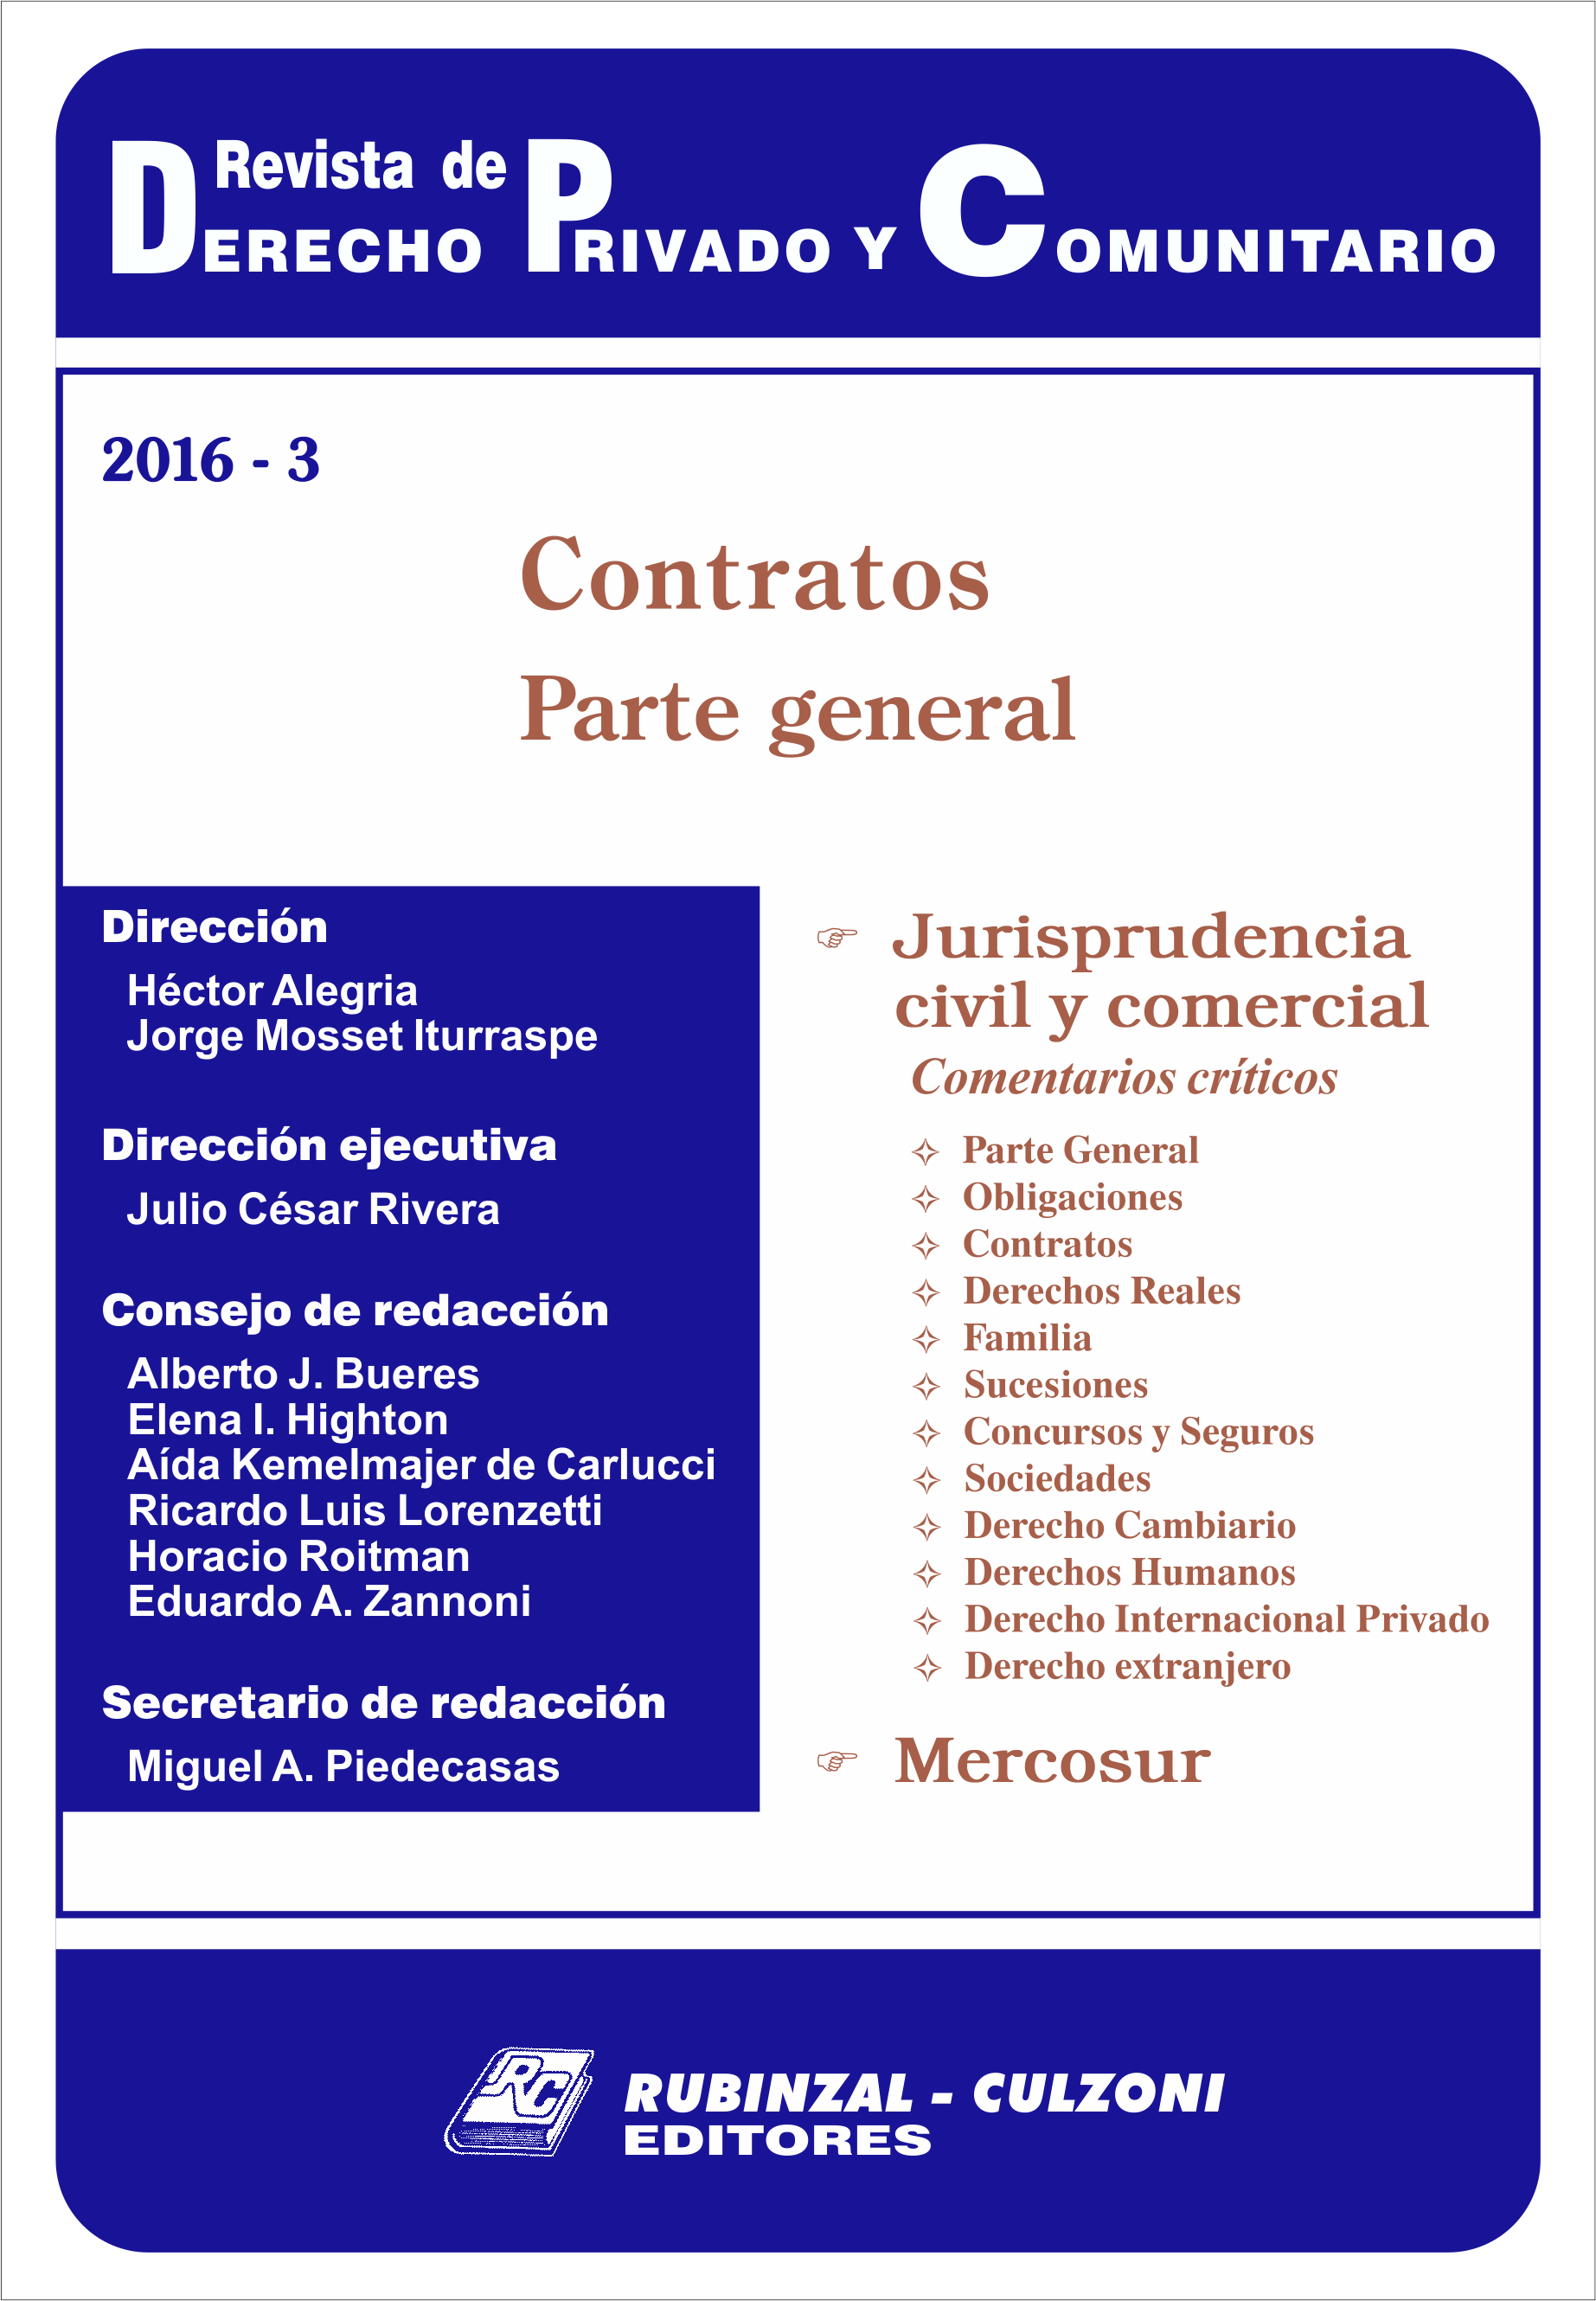 Revista de Derecho Privado y Comunitario - Contratos. Parte general.